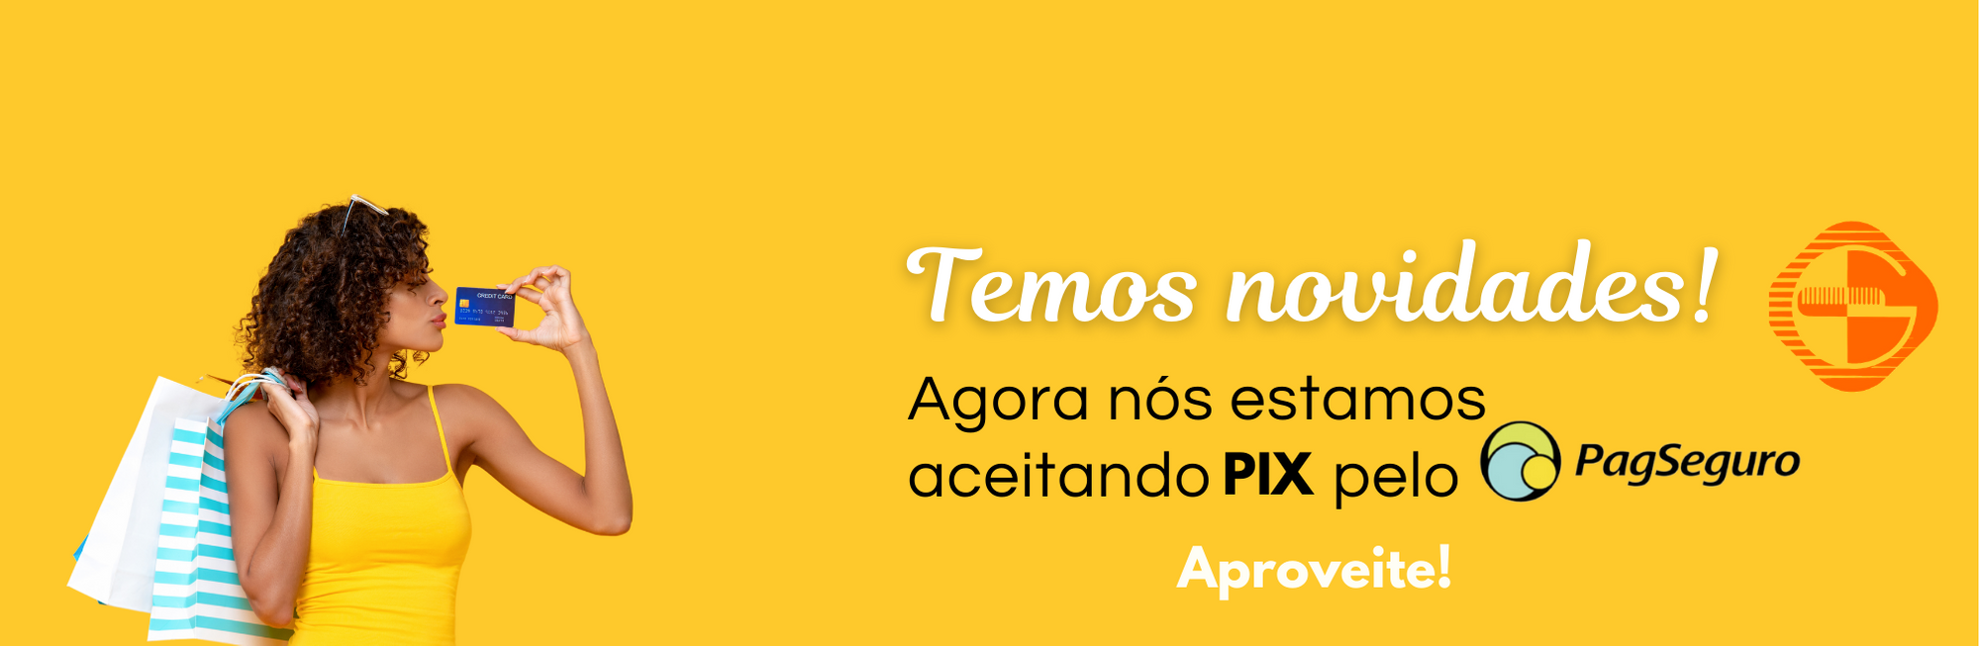 PIx no PagSeguro